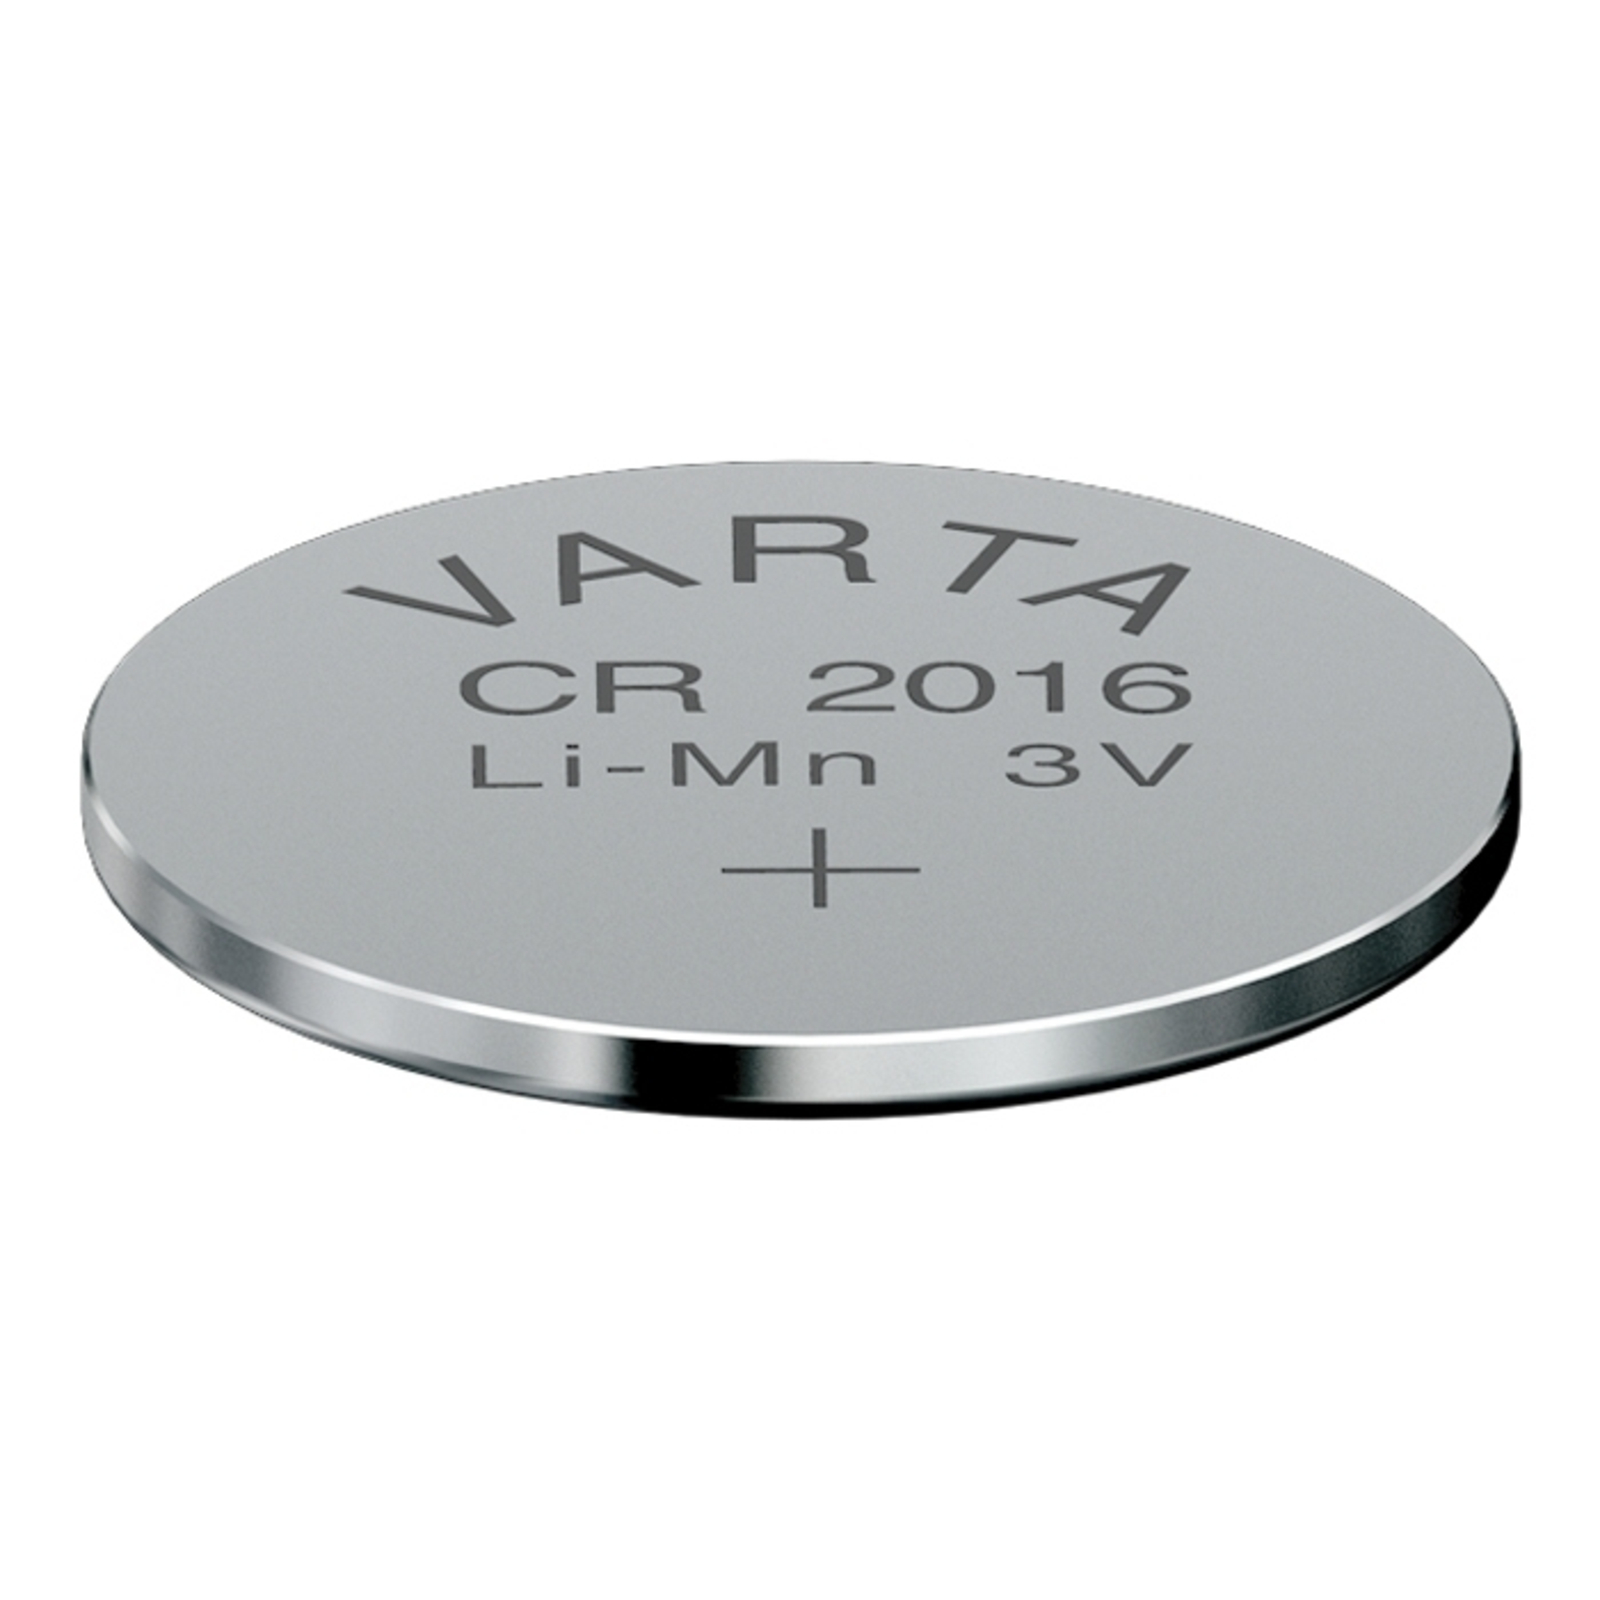 Batteria a bottone al litio CR2016 3V di VARTA